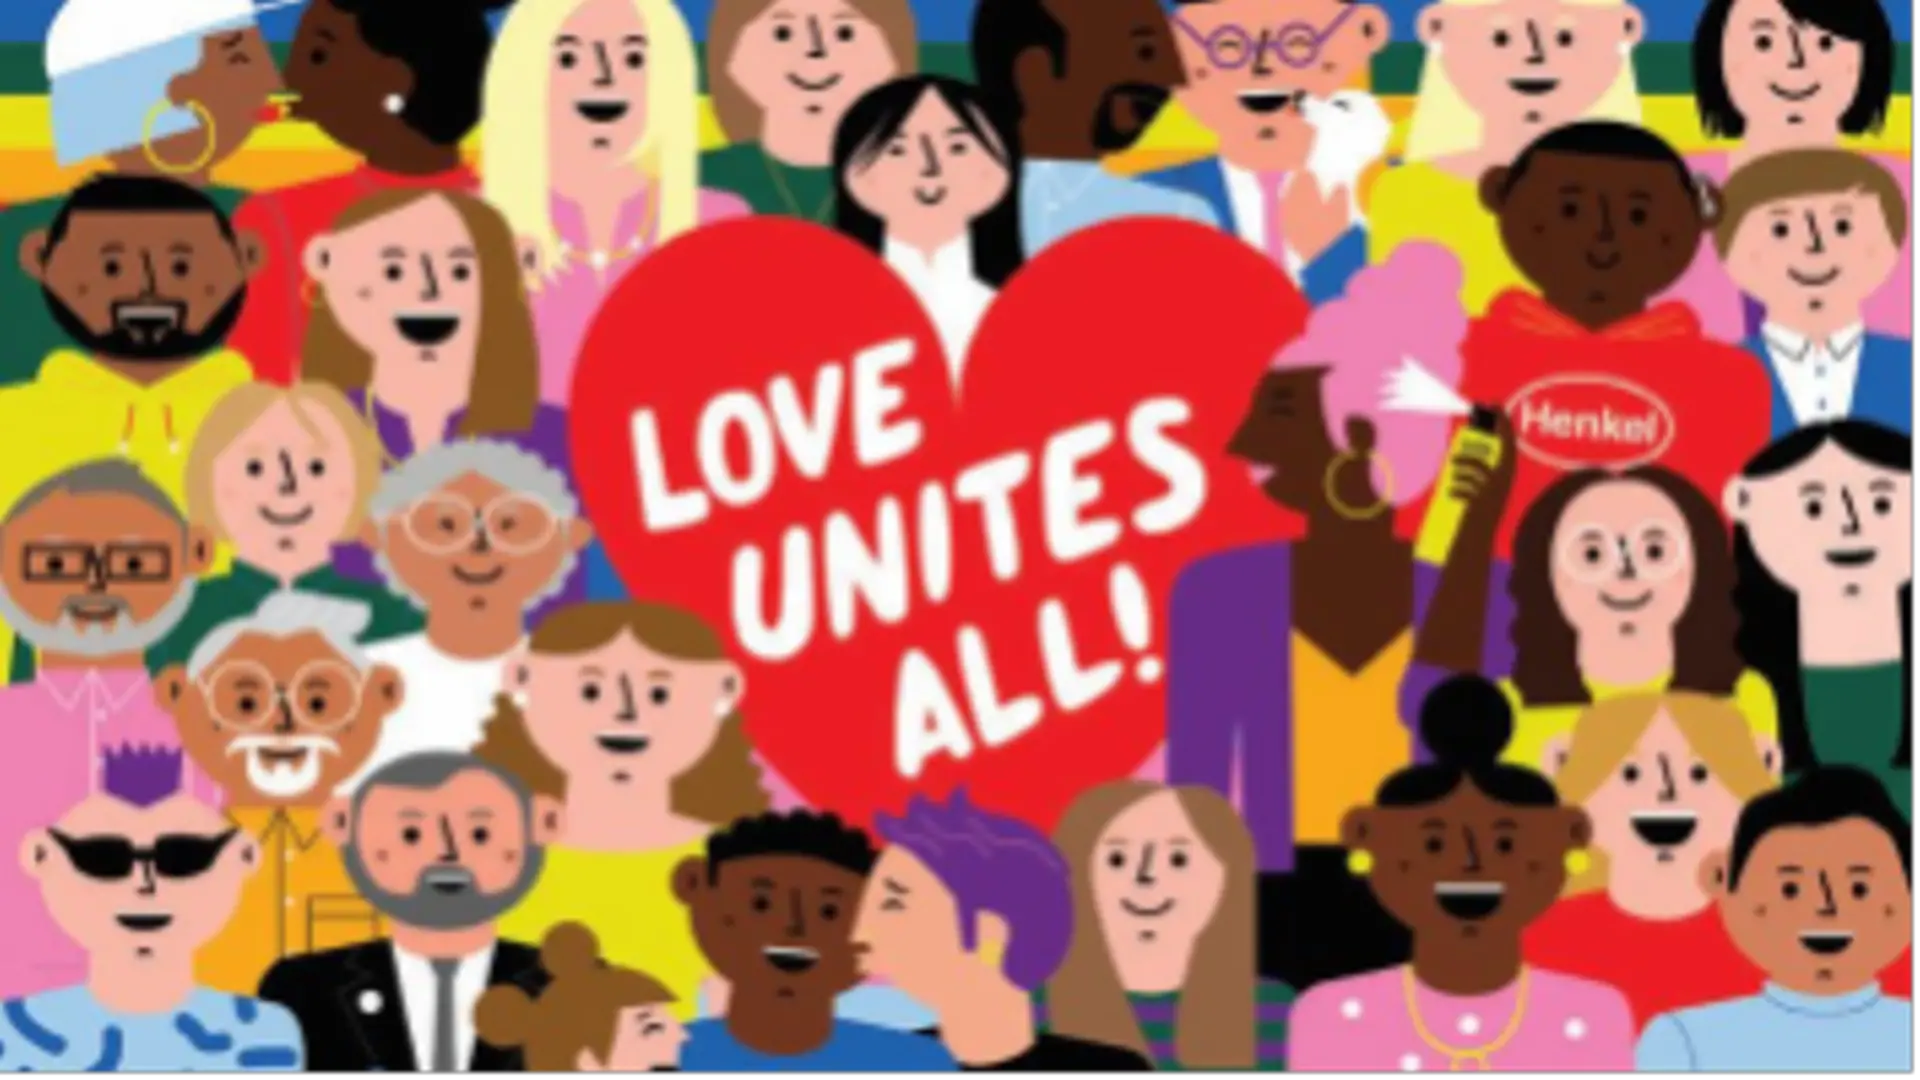 Love unites us all